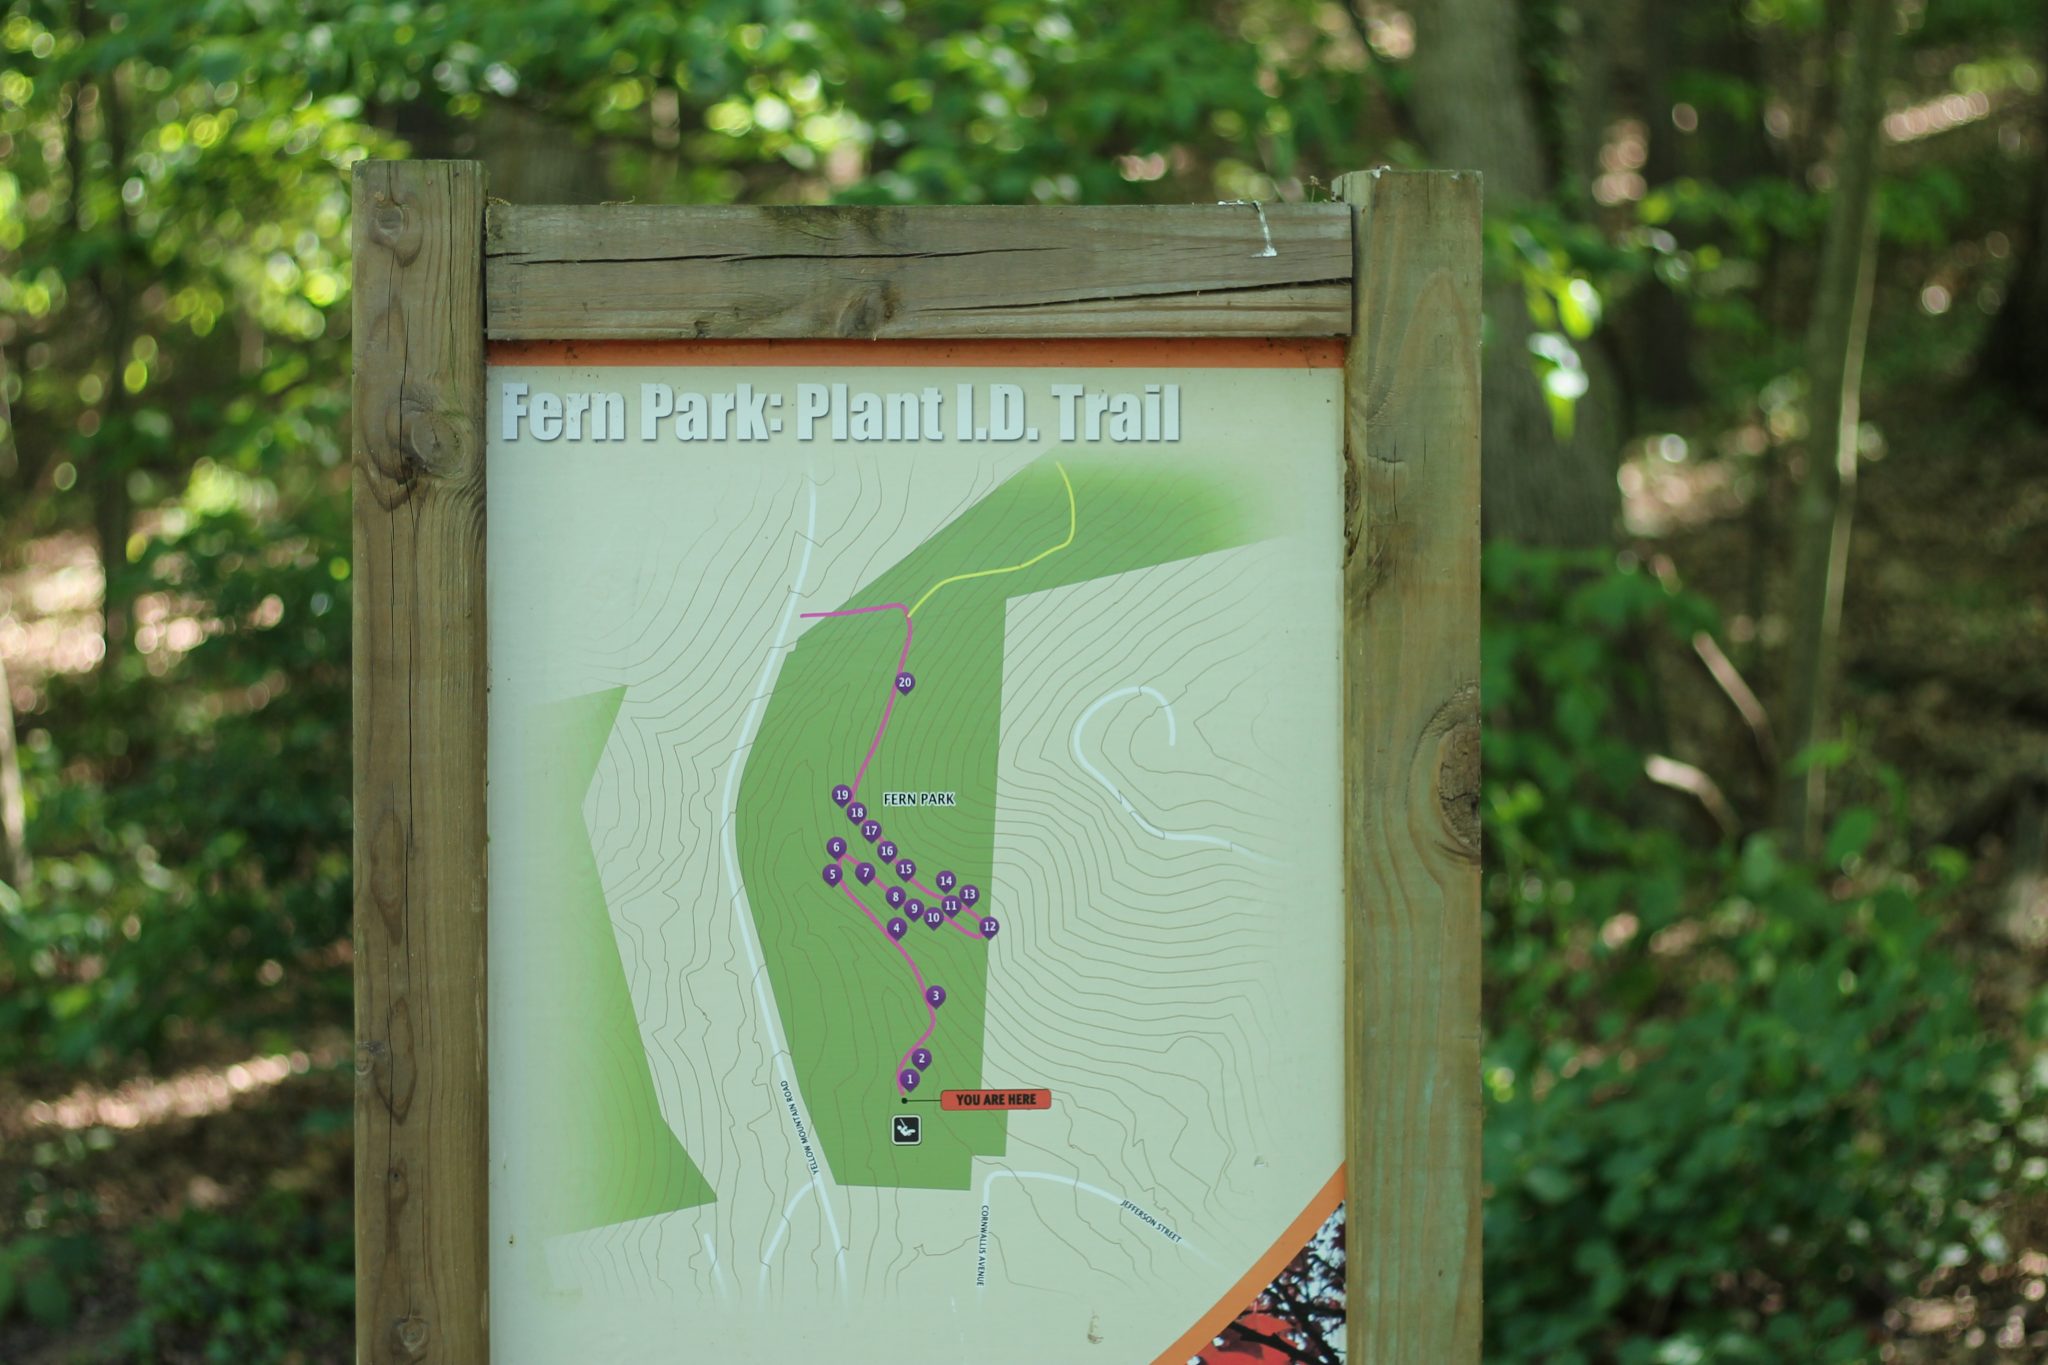 Fern Park Plant Identification Trail Map in Roanoke